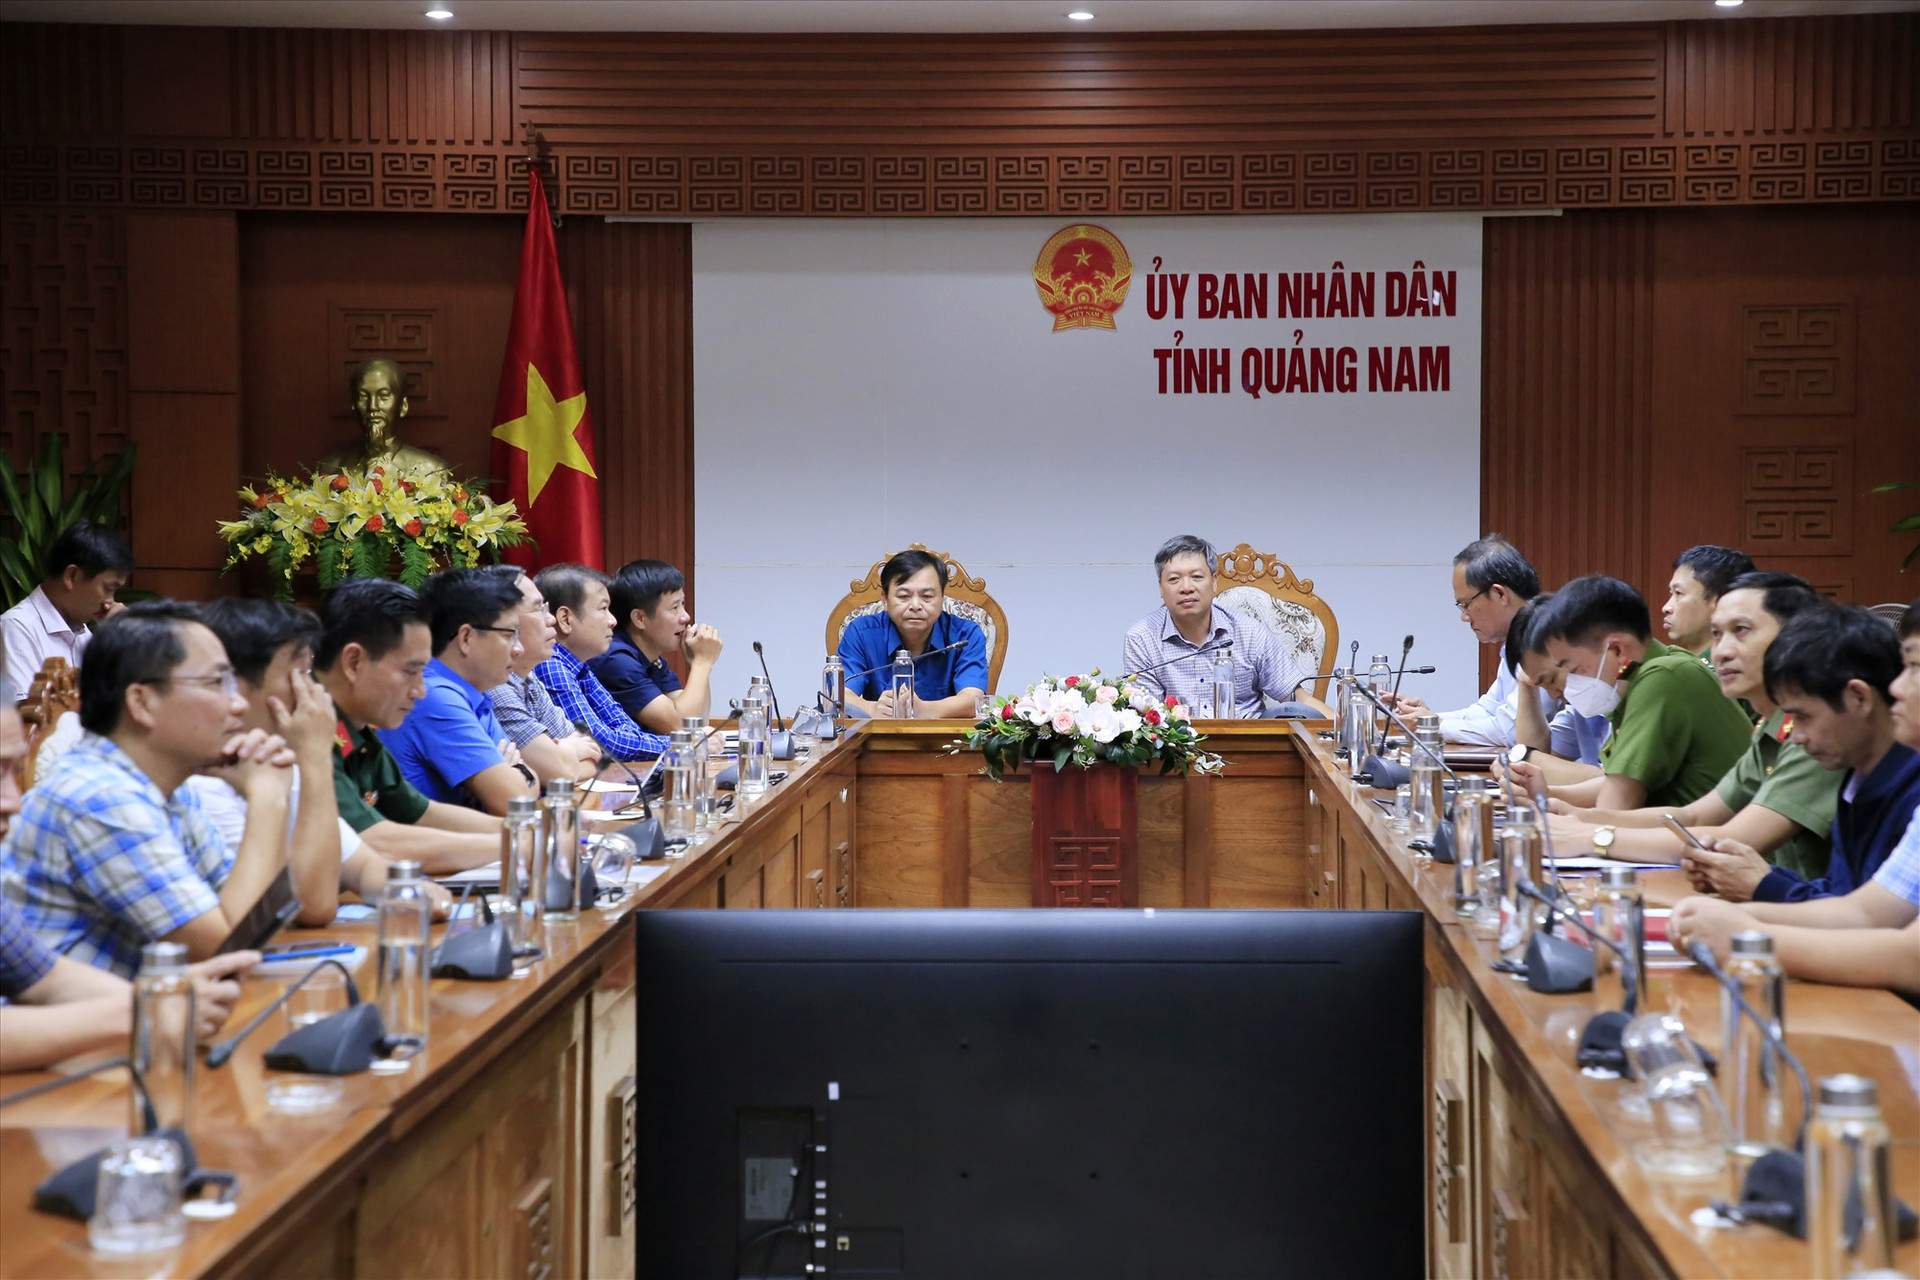 Thứ trưởng Nguyễn Hoàng Hiệp cùng Phó Chủ tịch UBND tỉnh Hồ Quang Bửu chủ trì buổi họp trực tuyến. Ảnh: T.C